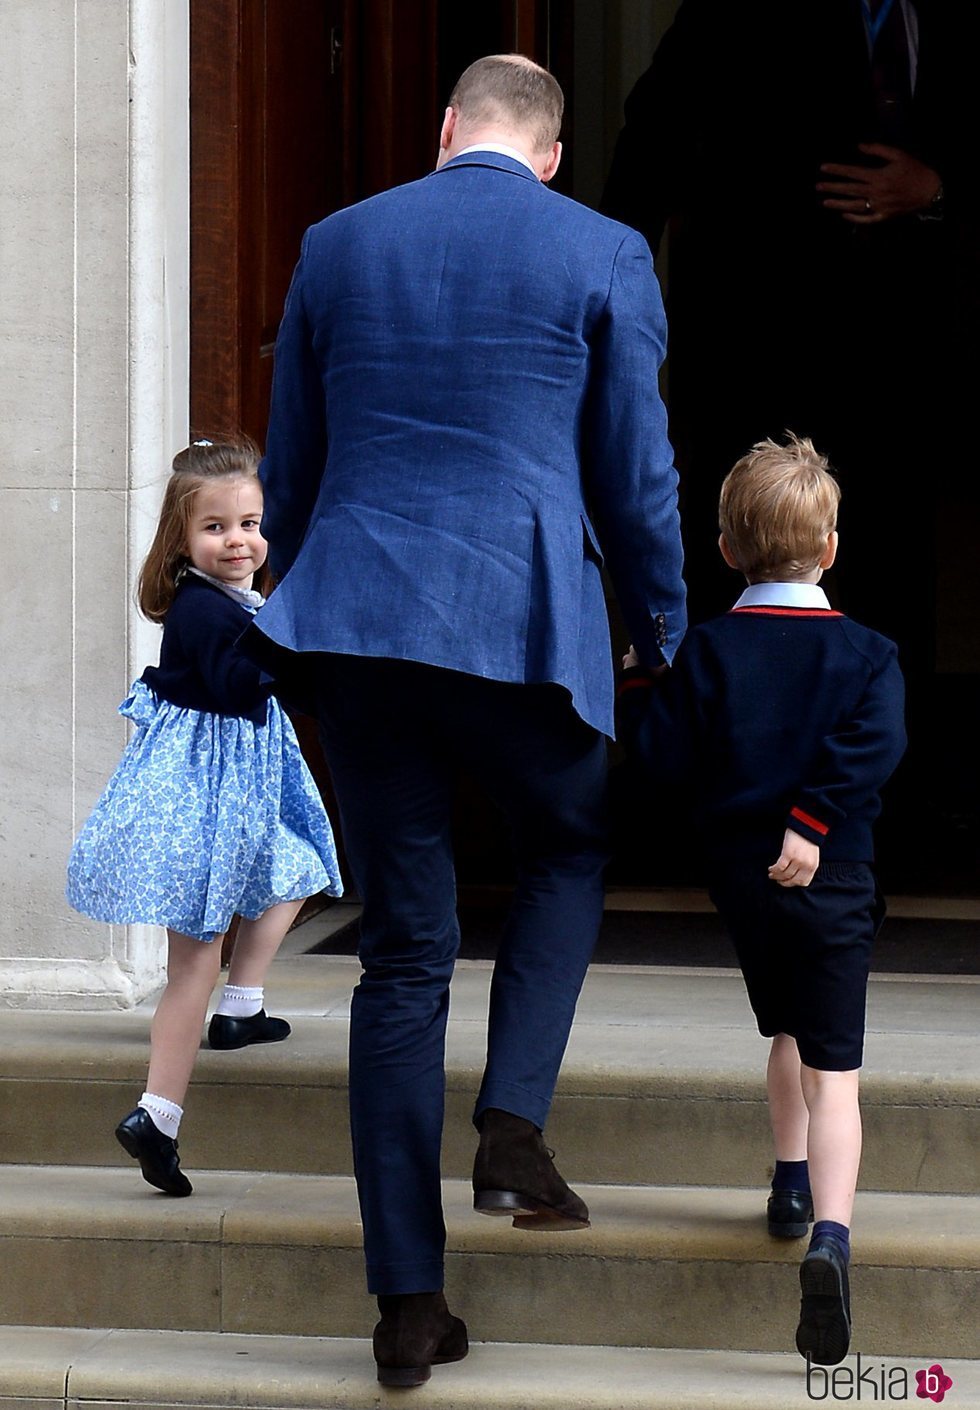 El Príncipe Guillermo de Inglaterra entrando a ver al bebé recién nacido con Jorge y Carlota de Cambridge